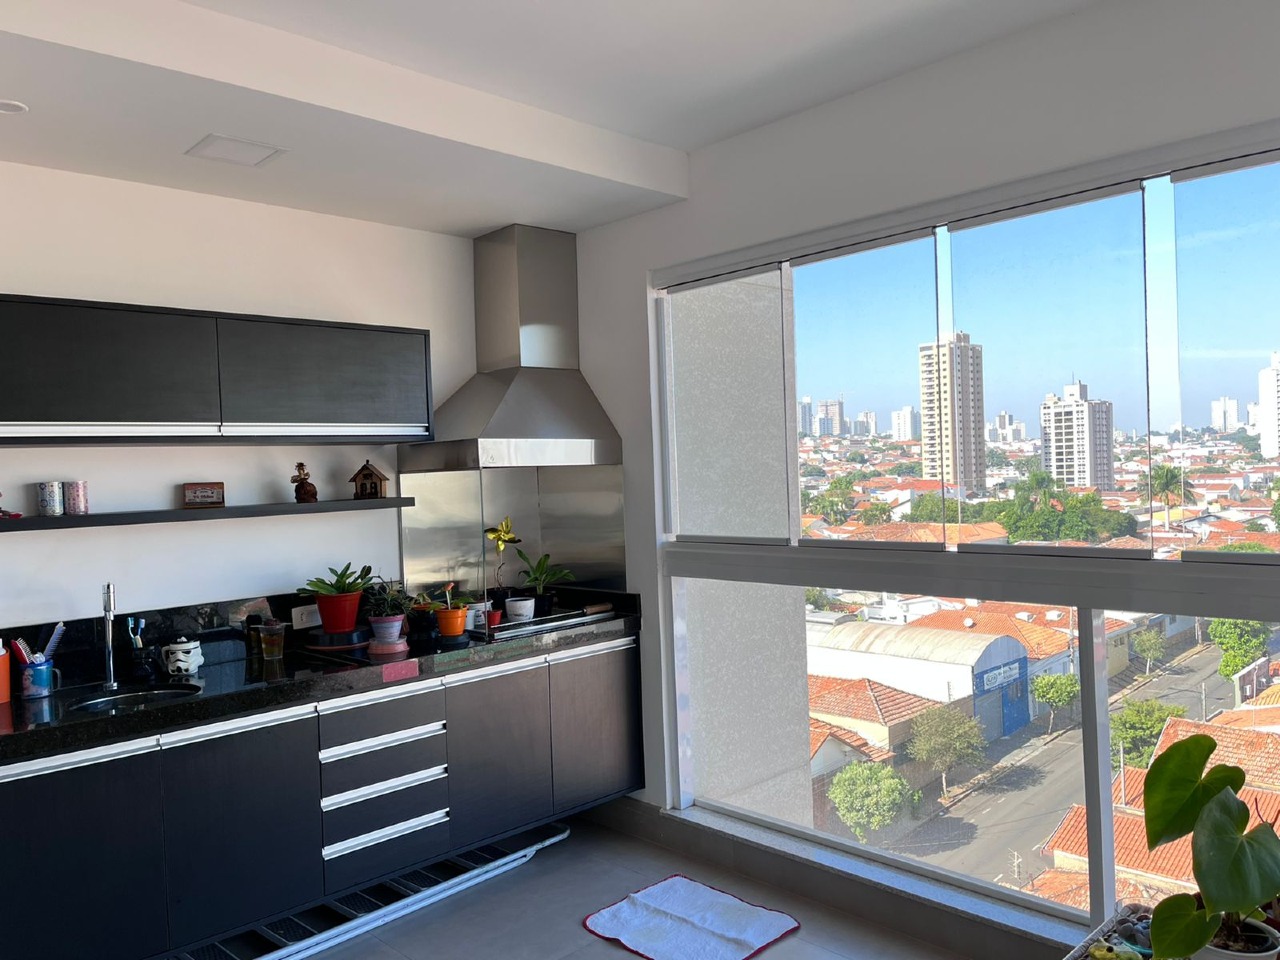 Apartamento à venda, 3 quartos, 1 suíte, 2 vagas, no bairro Cidade Alta em Piracicaba - SP